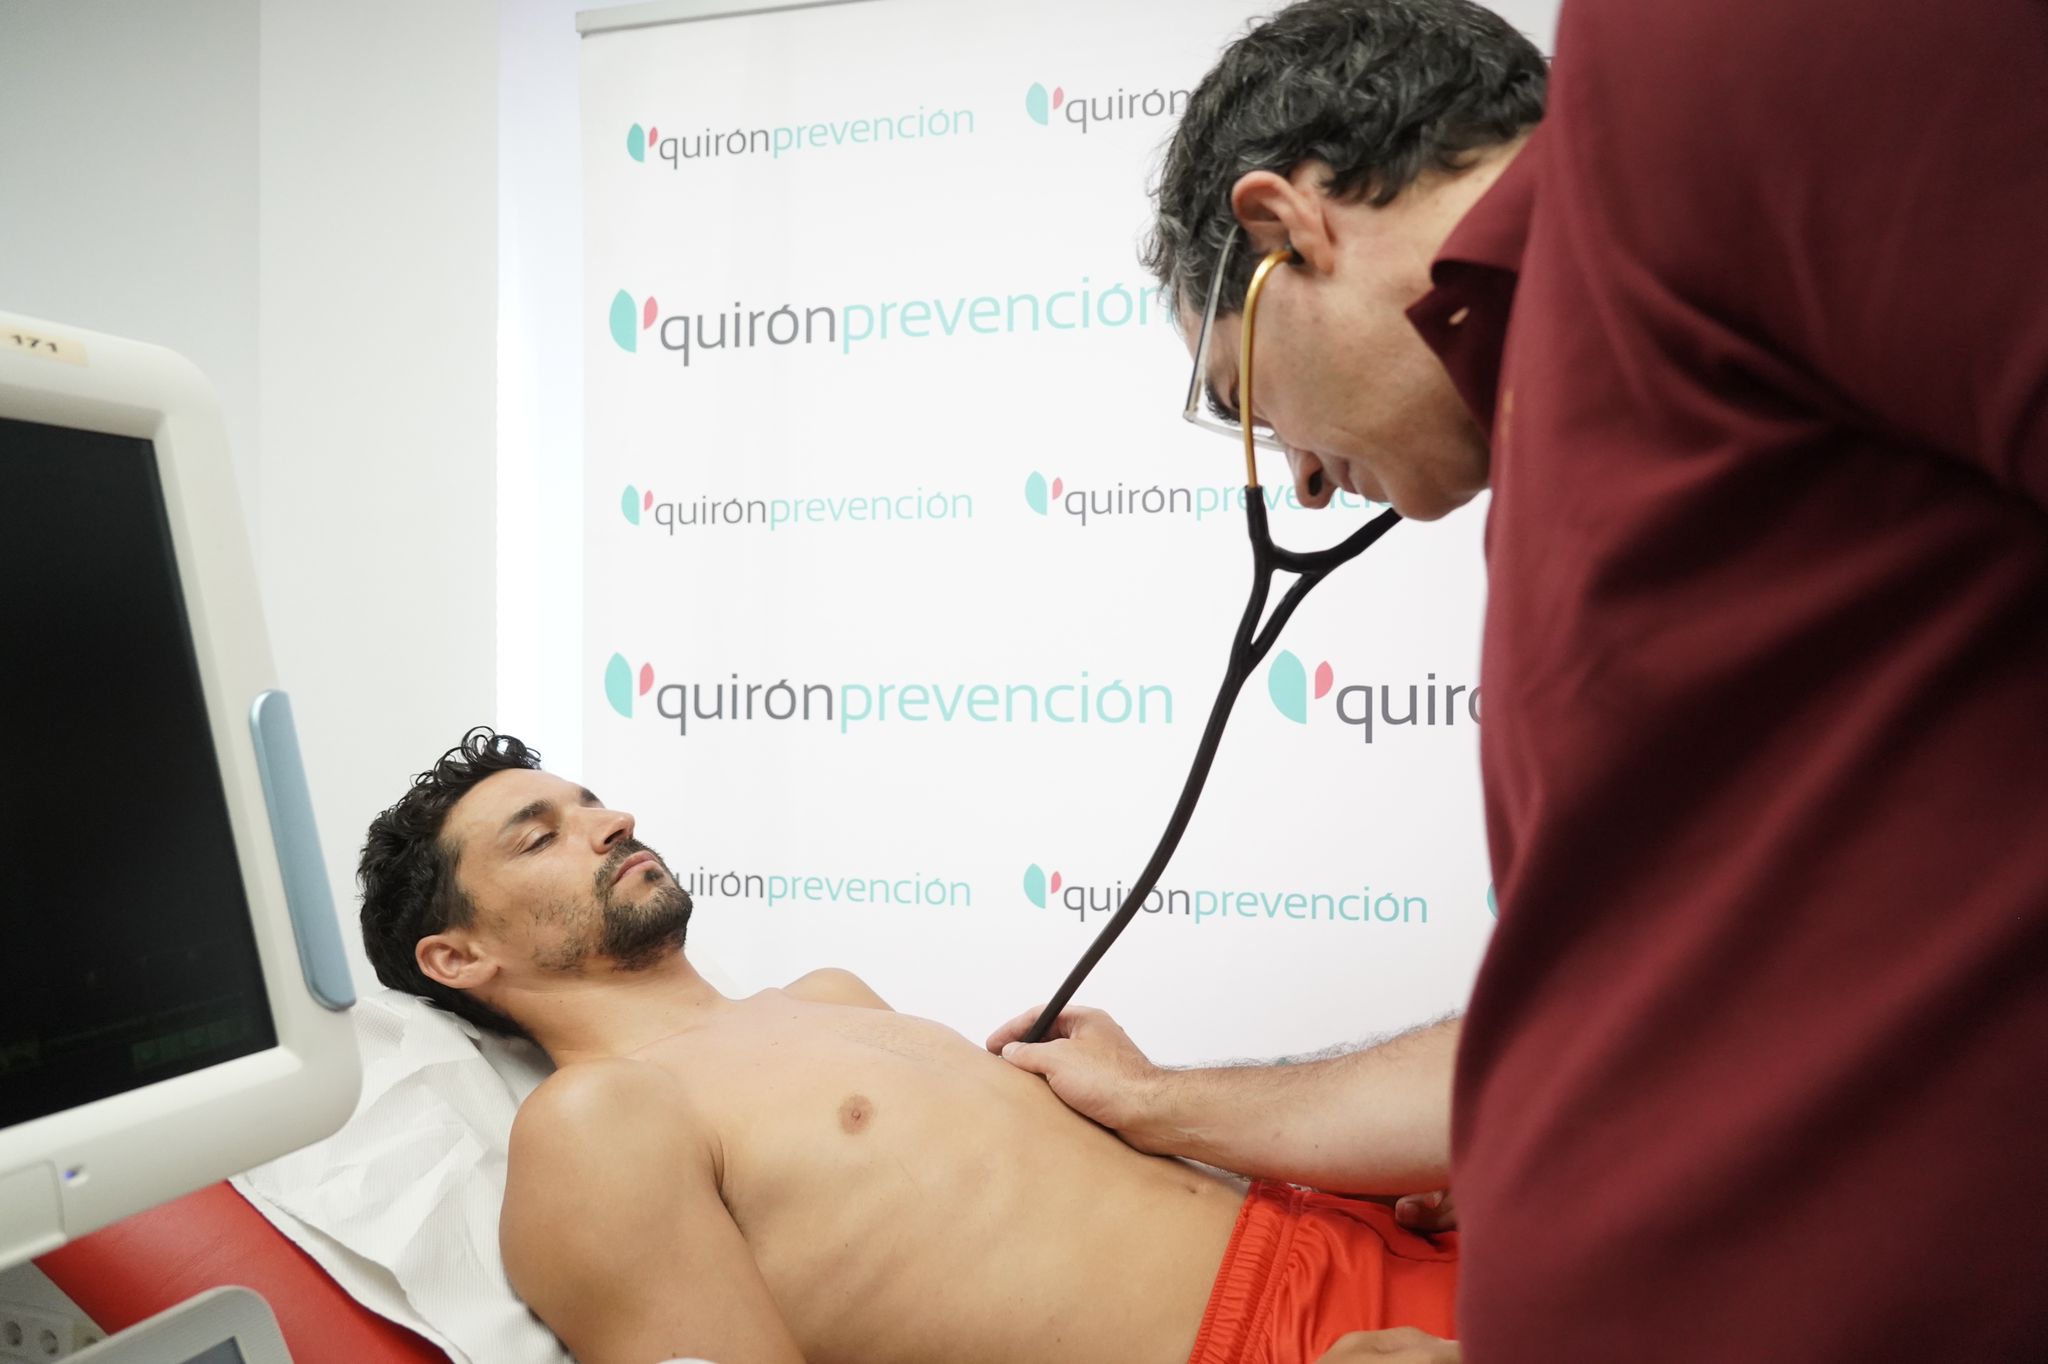 Jesús Navas undergoes medical tests